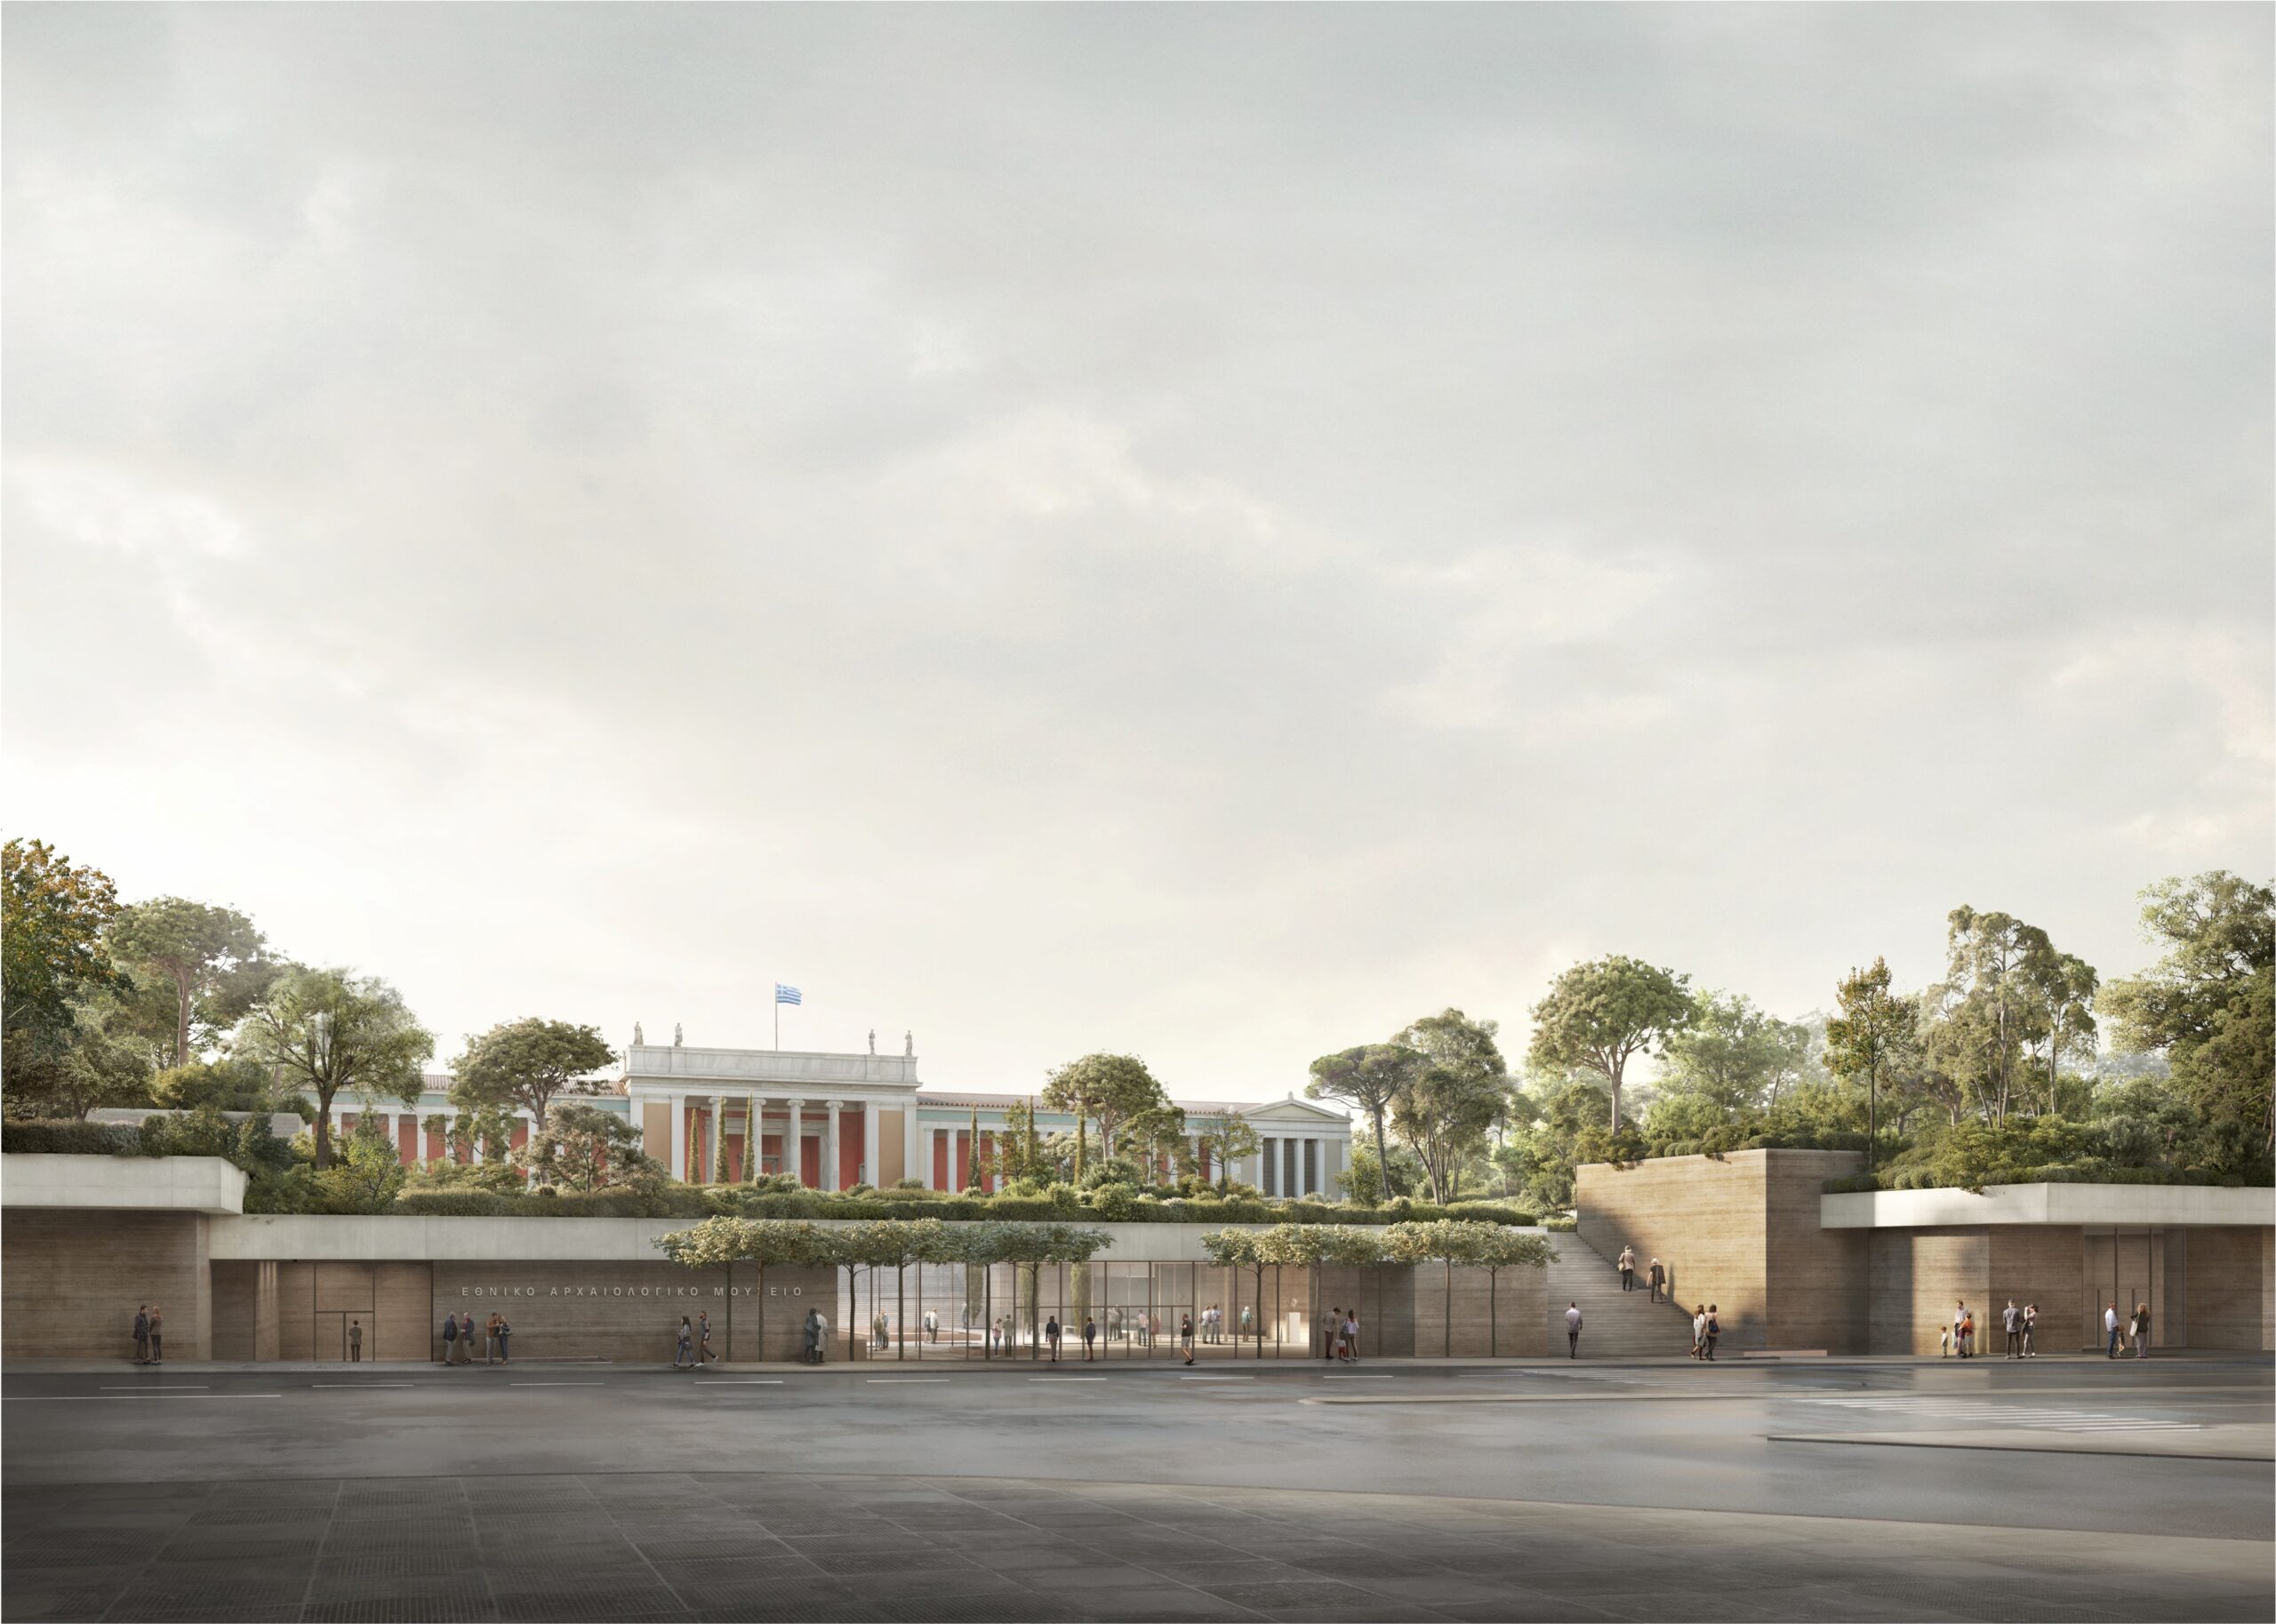 Ποιοι θα “χτίσουν” το Νέο Εθνικό Αρχαιολογικό Μουσείο στην Αθήνα – Οι νικητές του αμφιλεγόμενου αρχιτεκτονικού διαγωνισμού